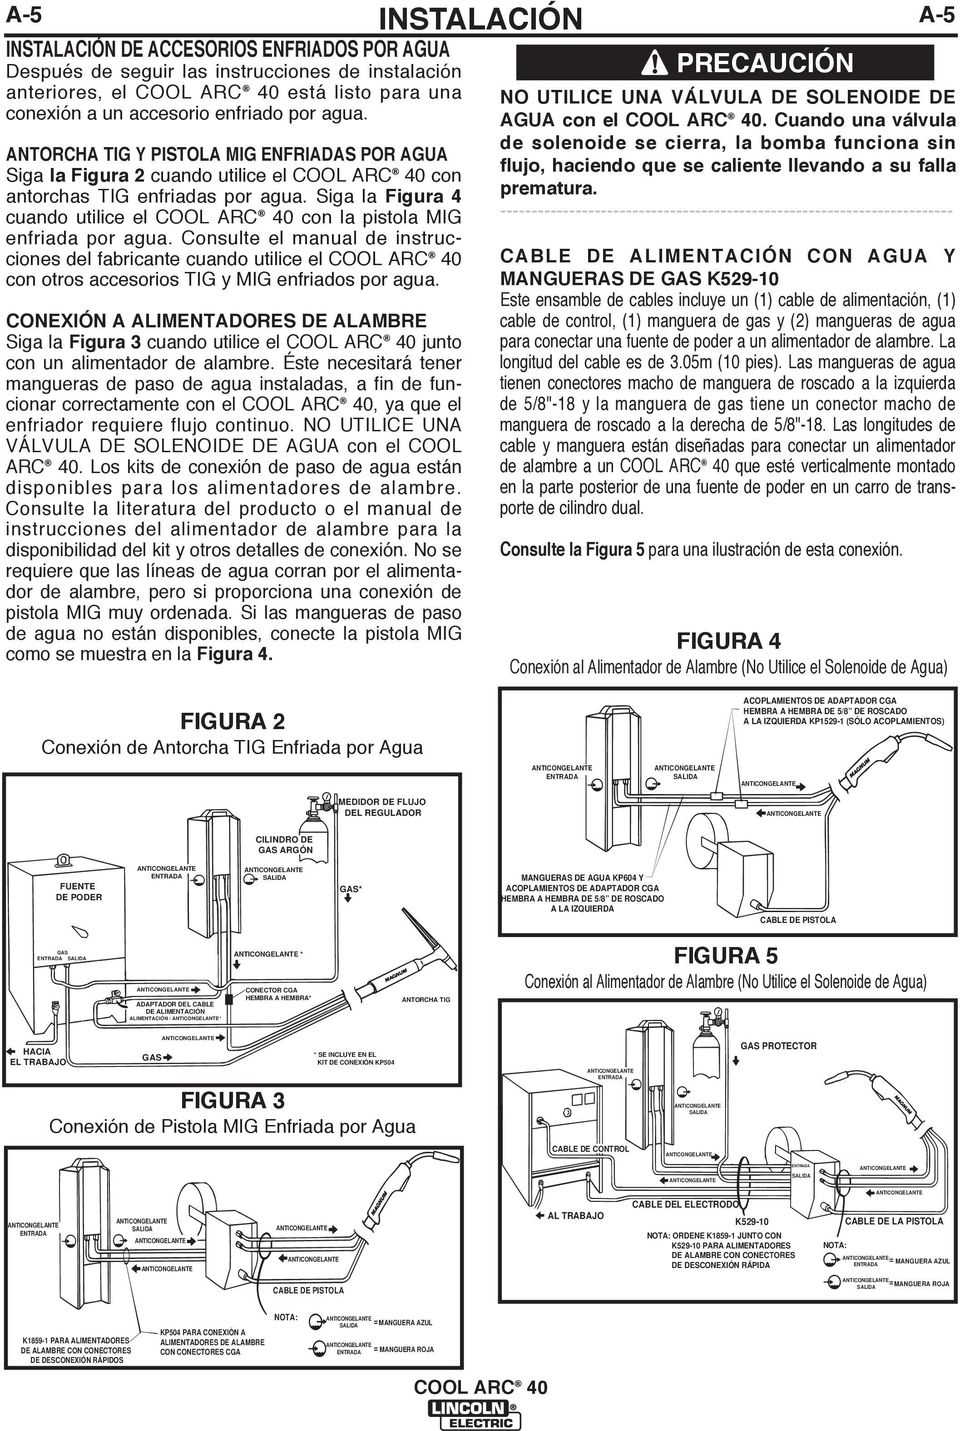 Consulte el manual de instrucciones del fabricante cuando utilice el con otros accesorios TIG y MIG enfriados por agua.